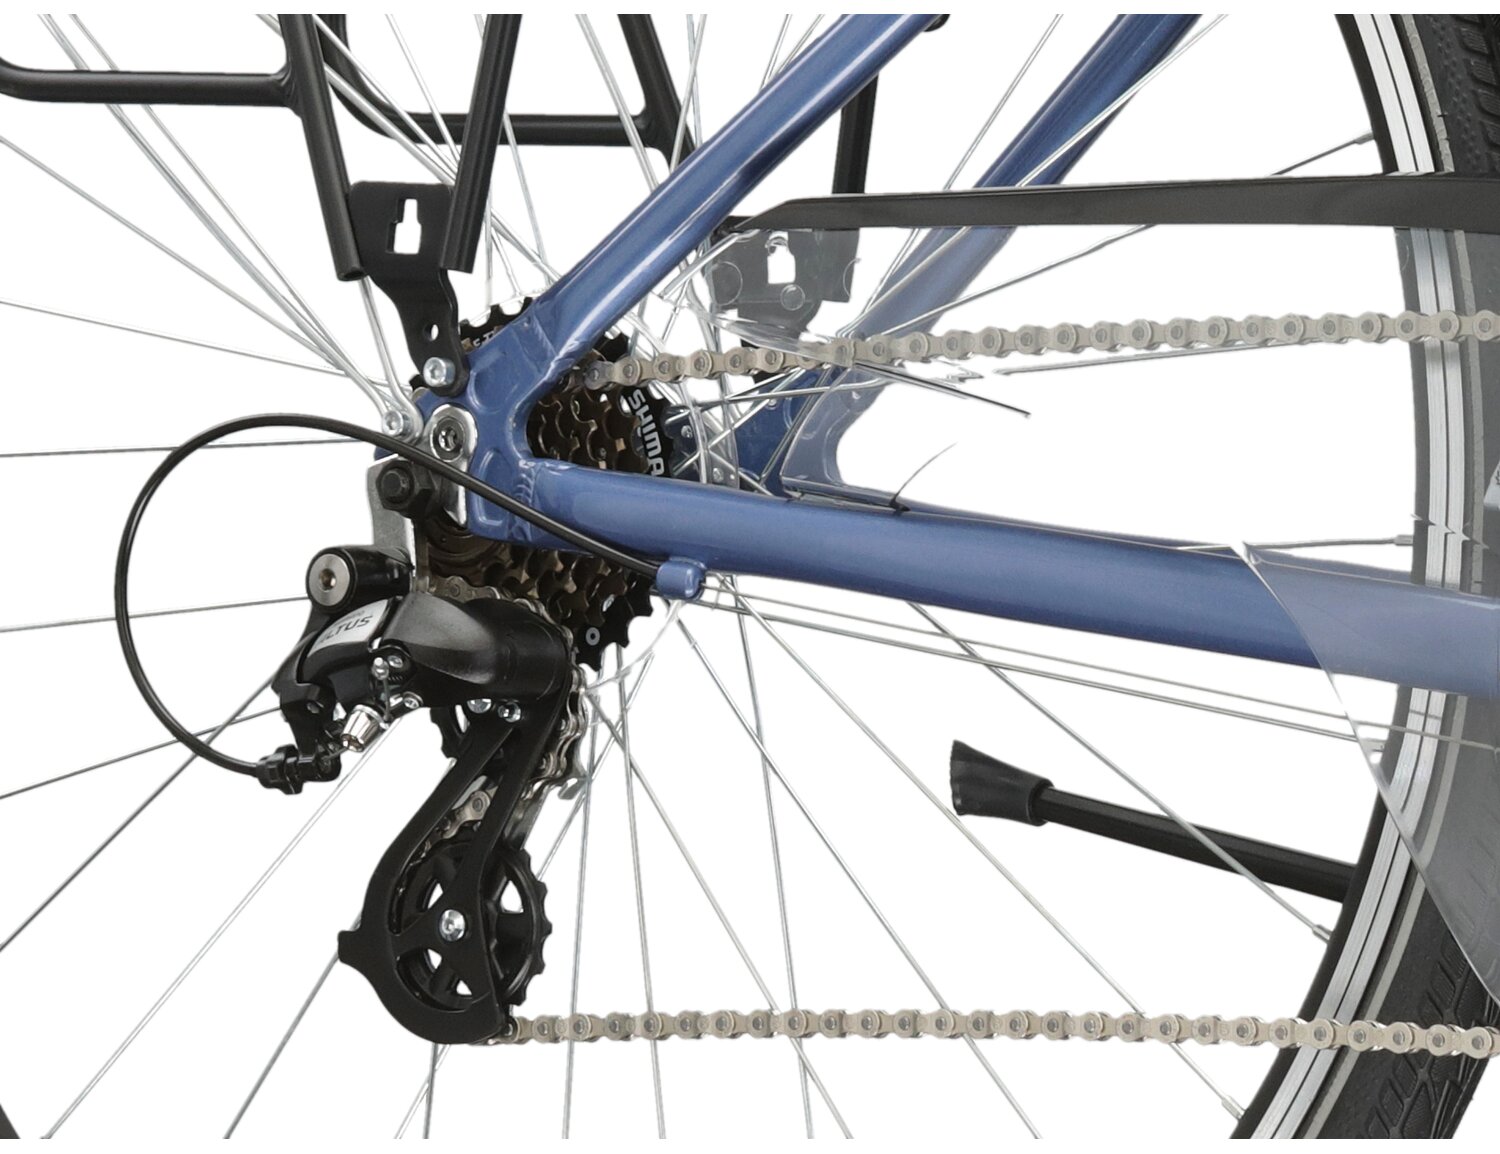  Tylna siedmiobiegowa przerzutka Shimano Altus M310 oraz hamulce v-brake w rowerze trekkingowym damskim KROSS Trans 2.0 